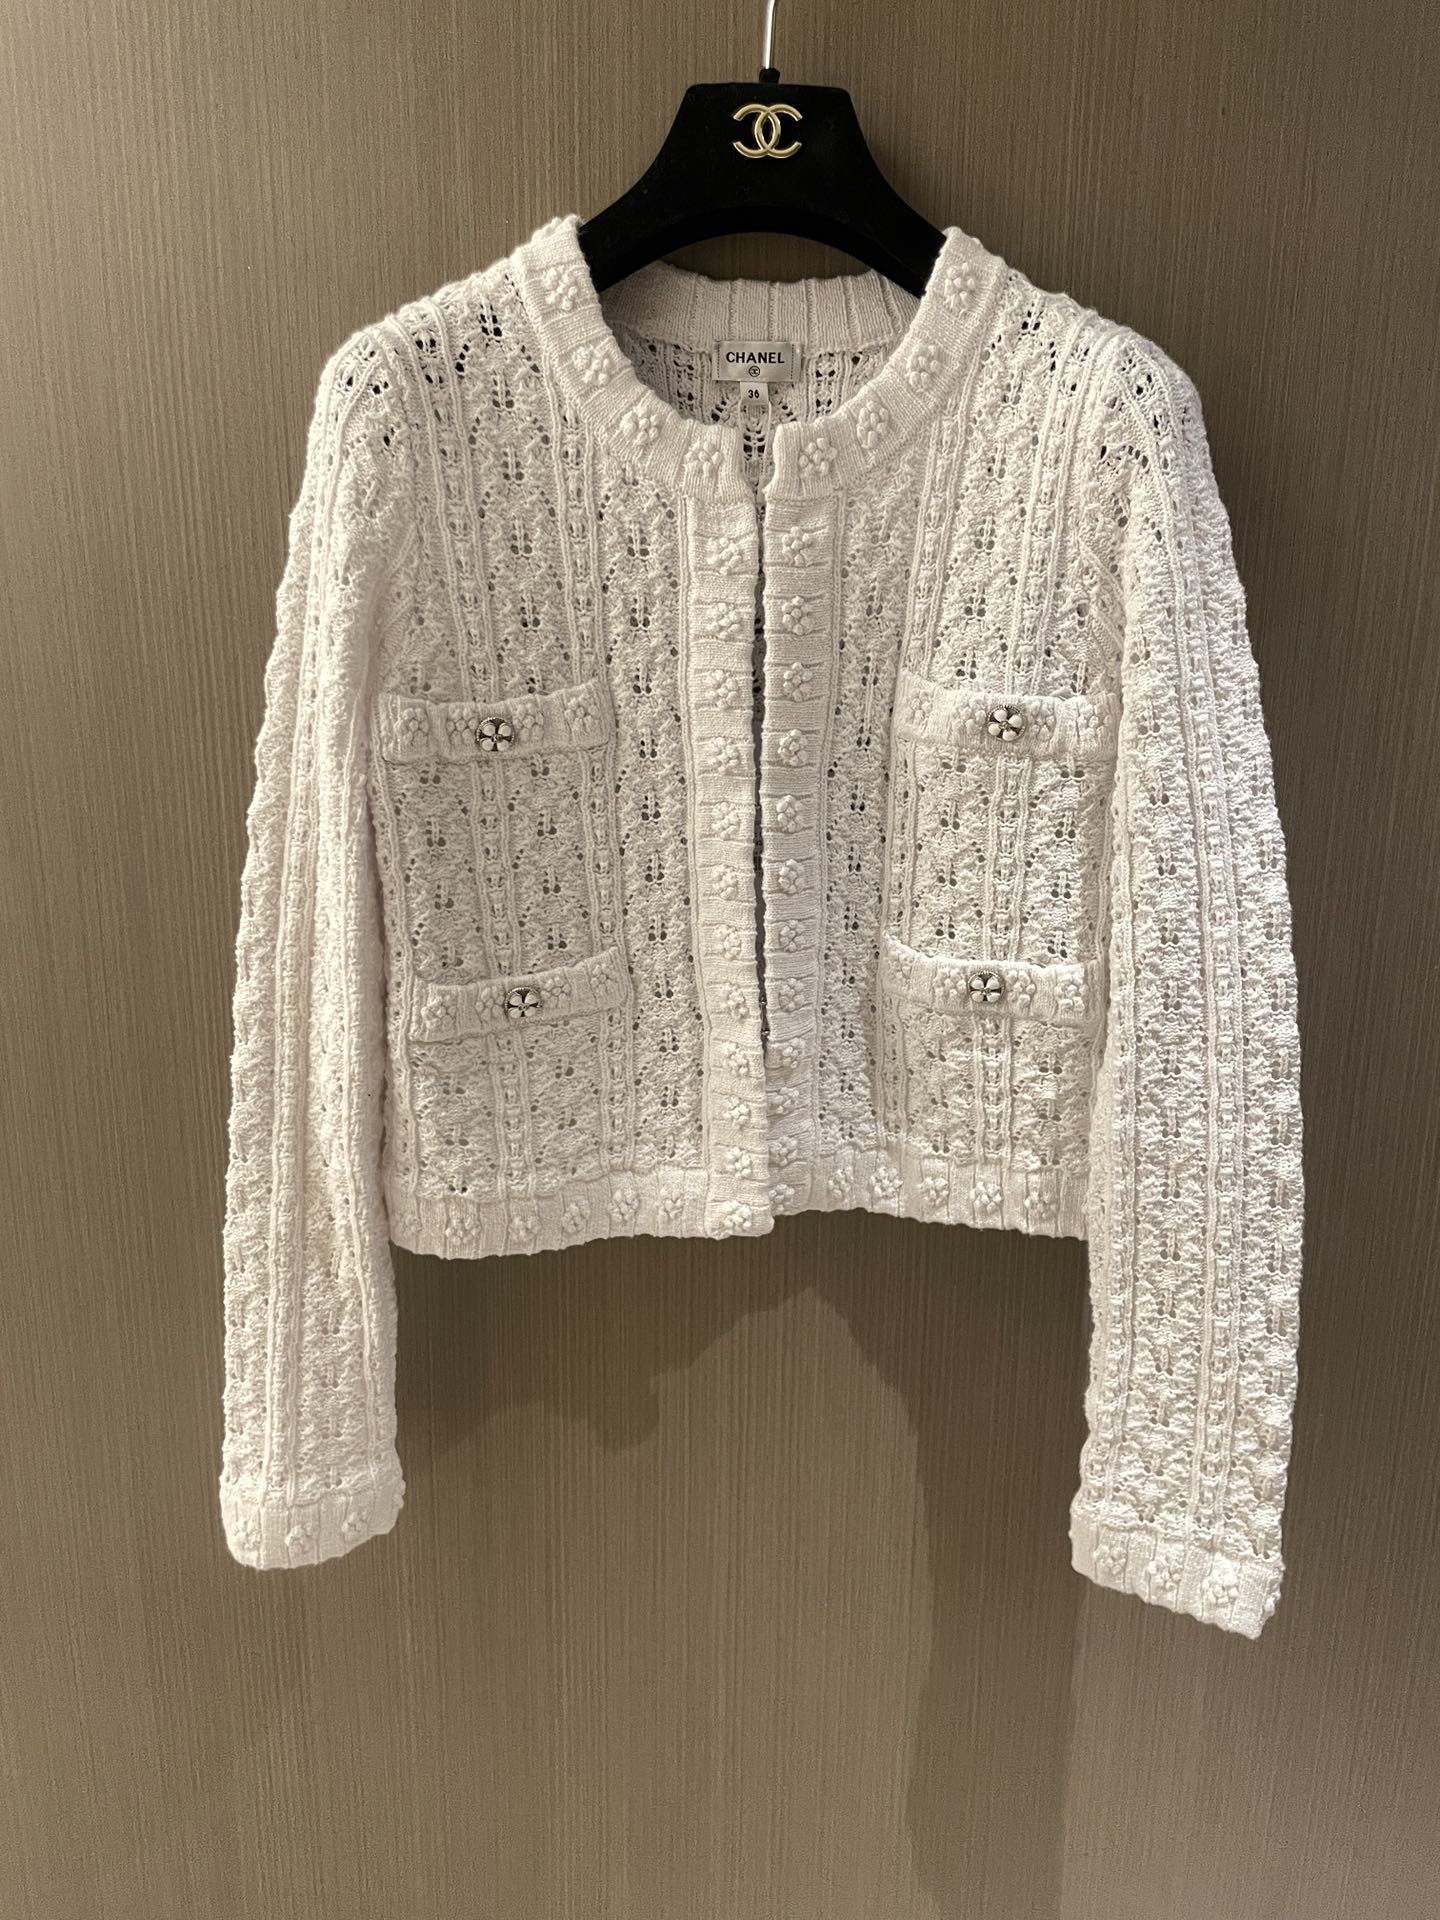 Chanel Abbigliamento Cardigan Nero Bianco Openwork Cotone Seta